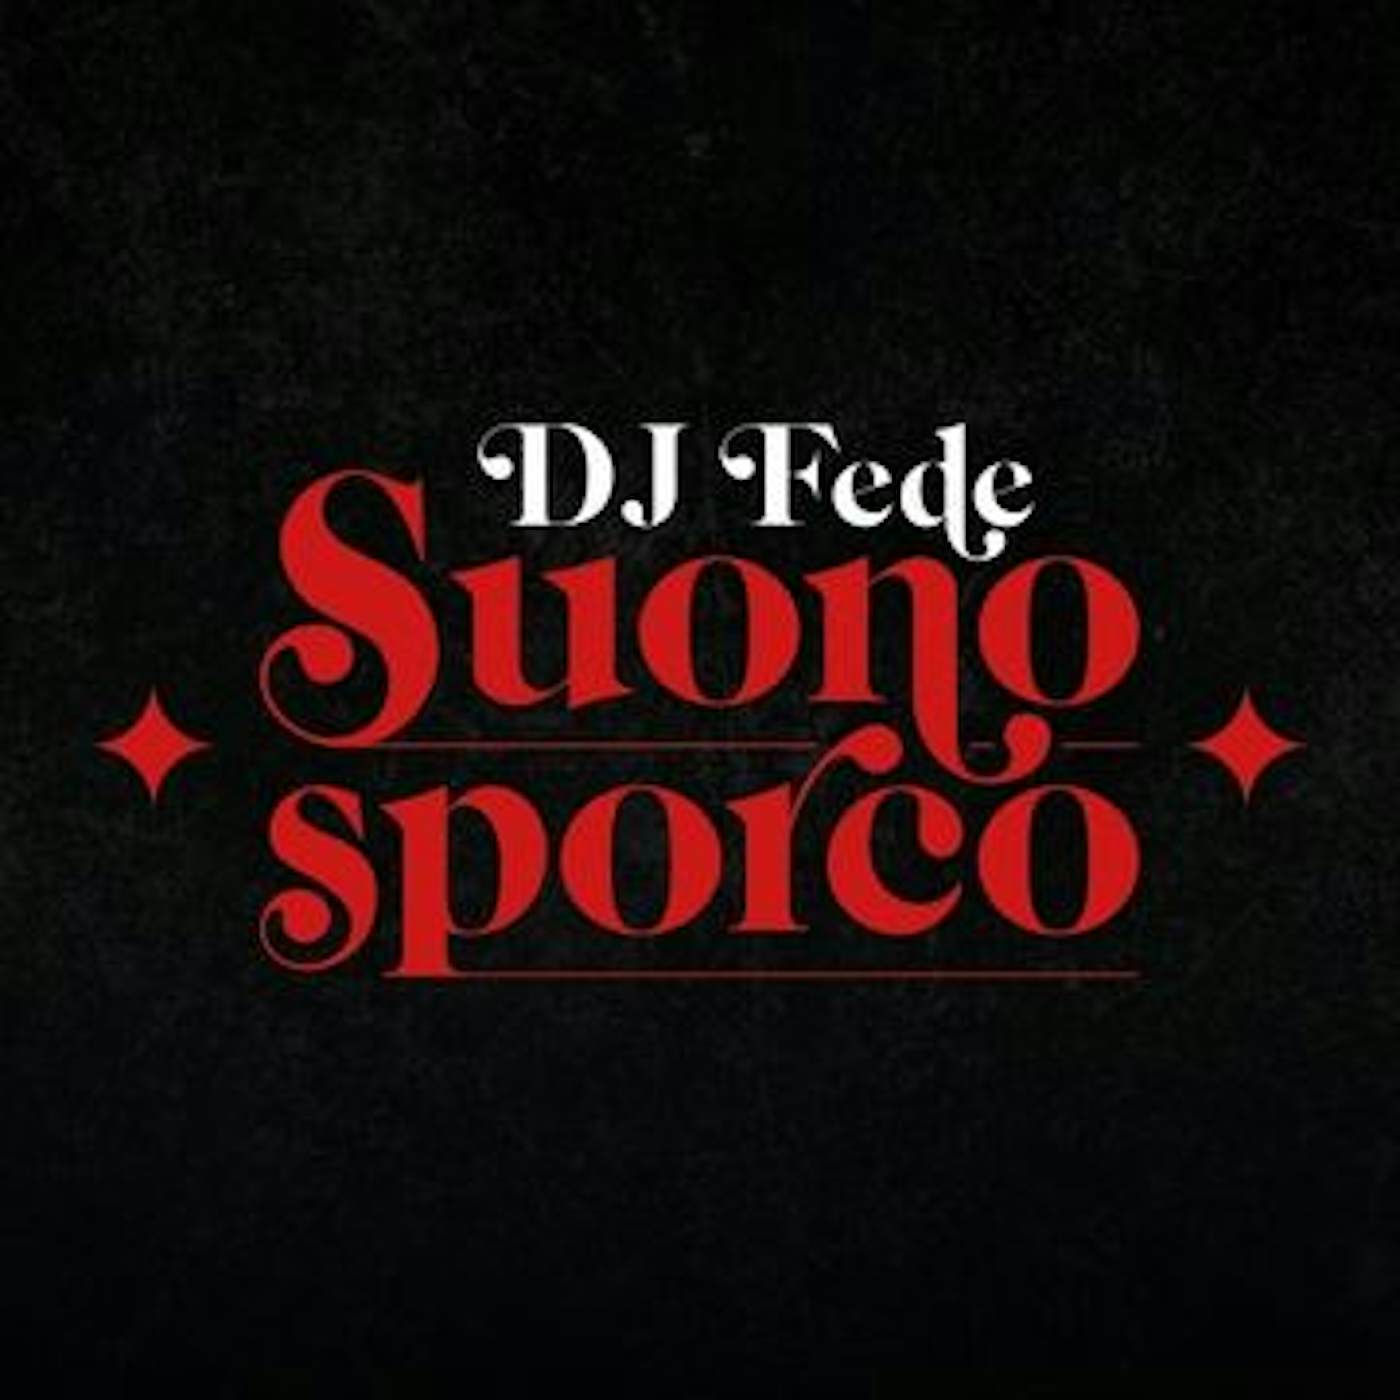 DJ Fede SUONO SPORCO CD